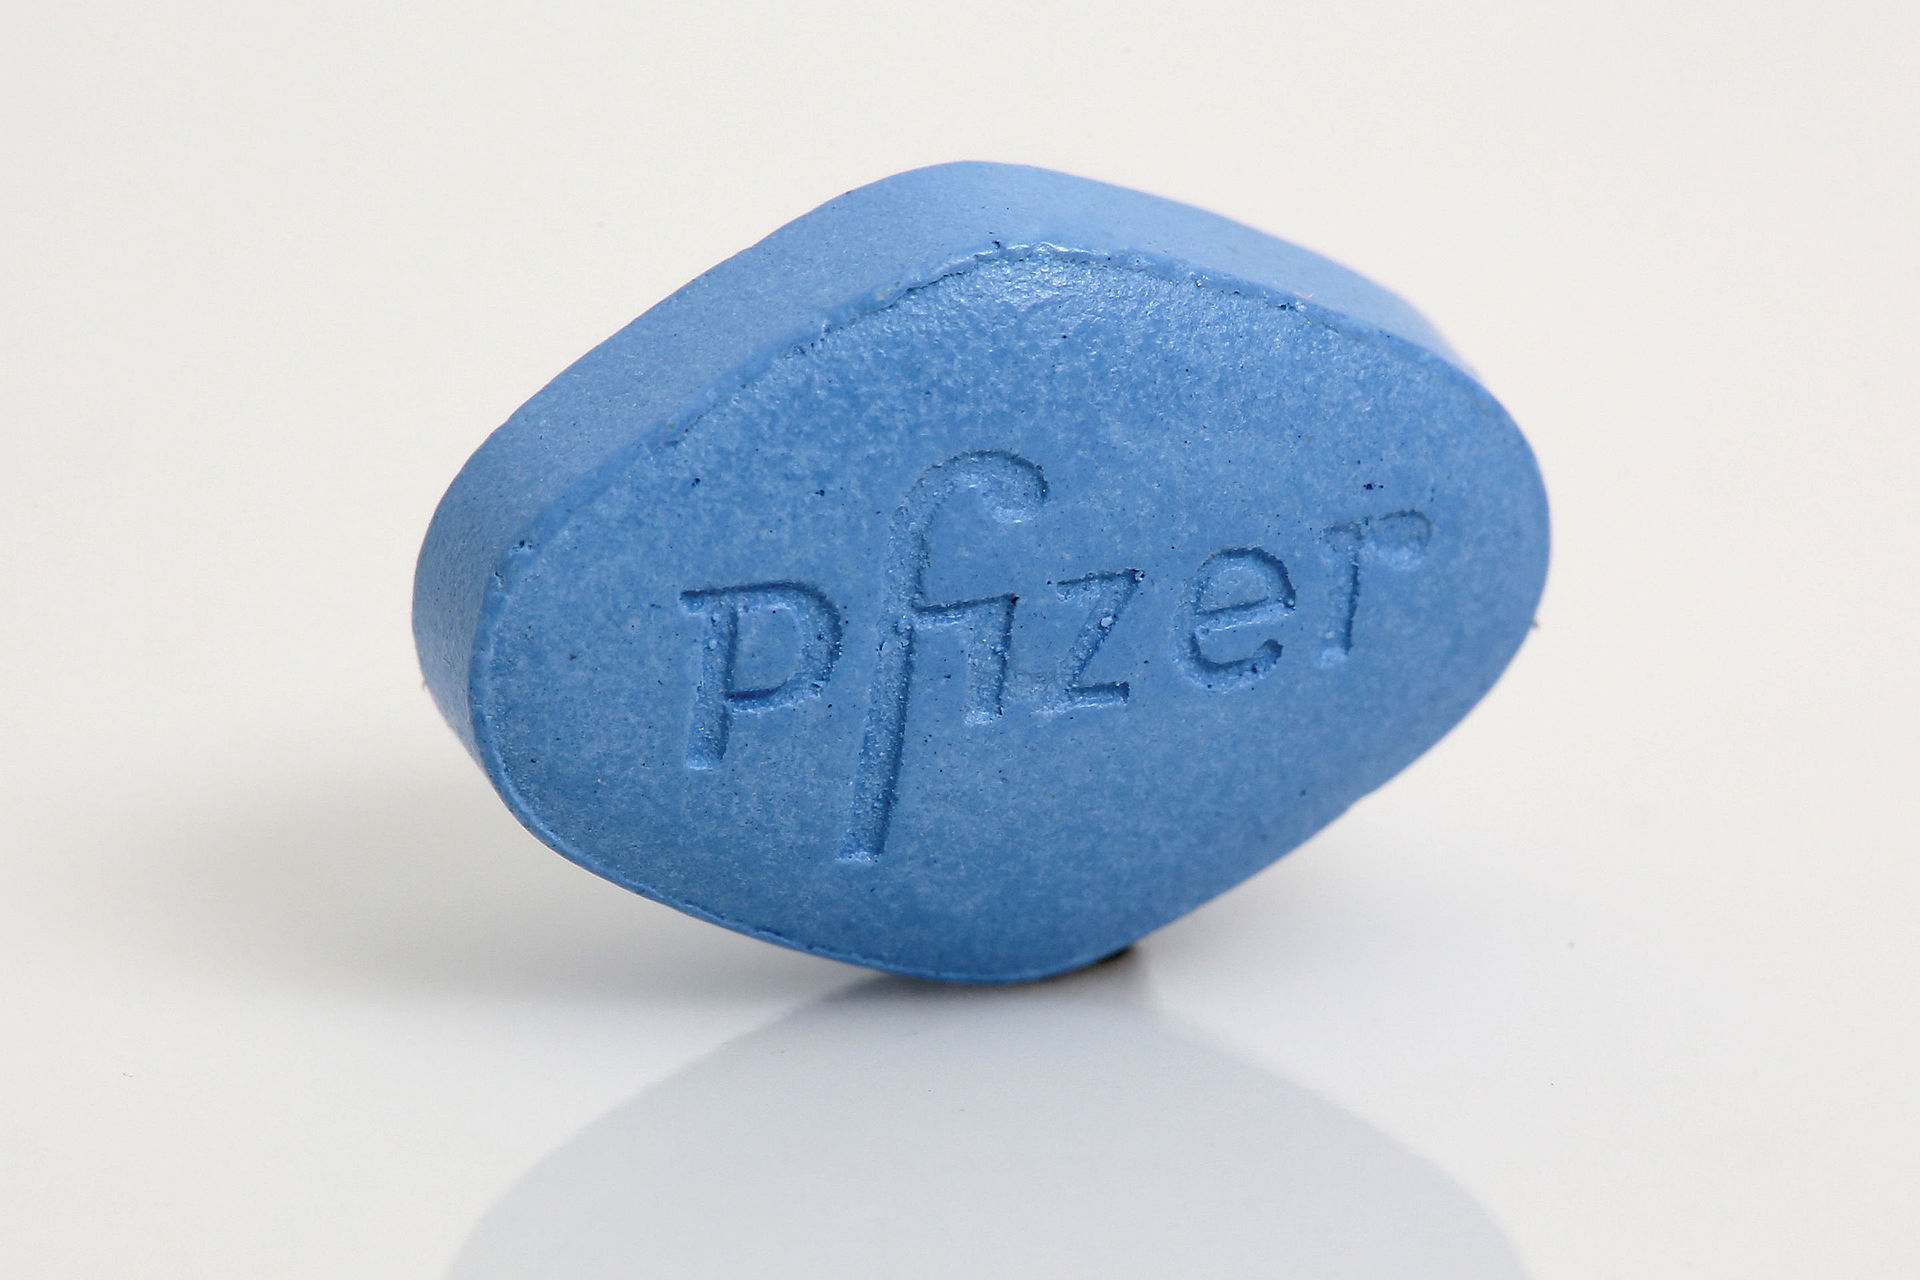 The original blue pill – Viagra